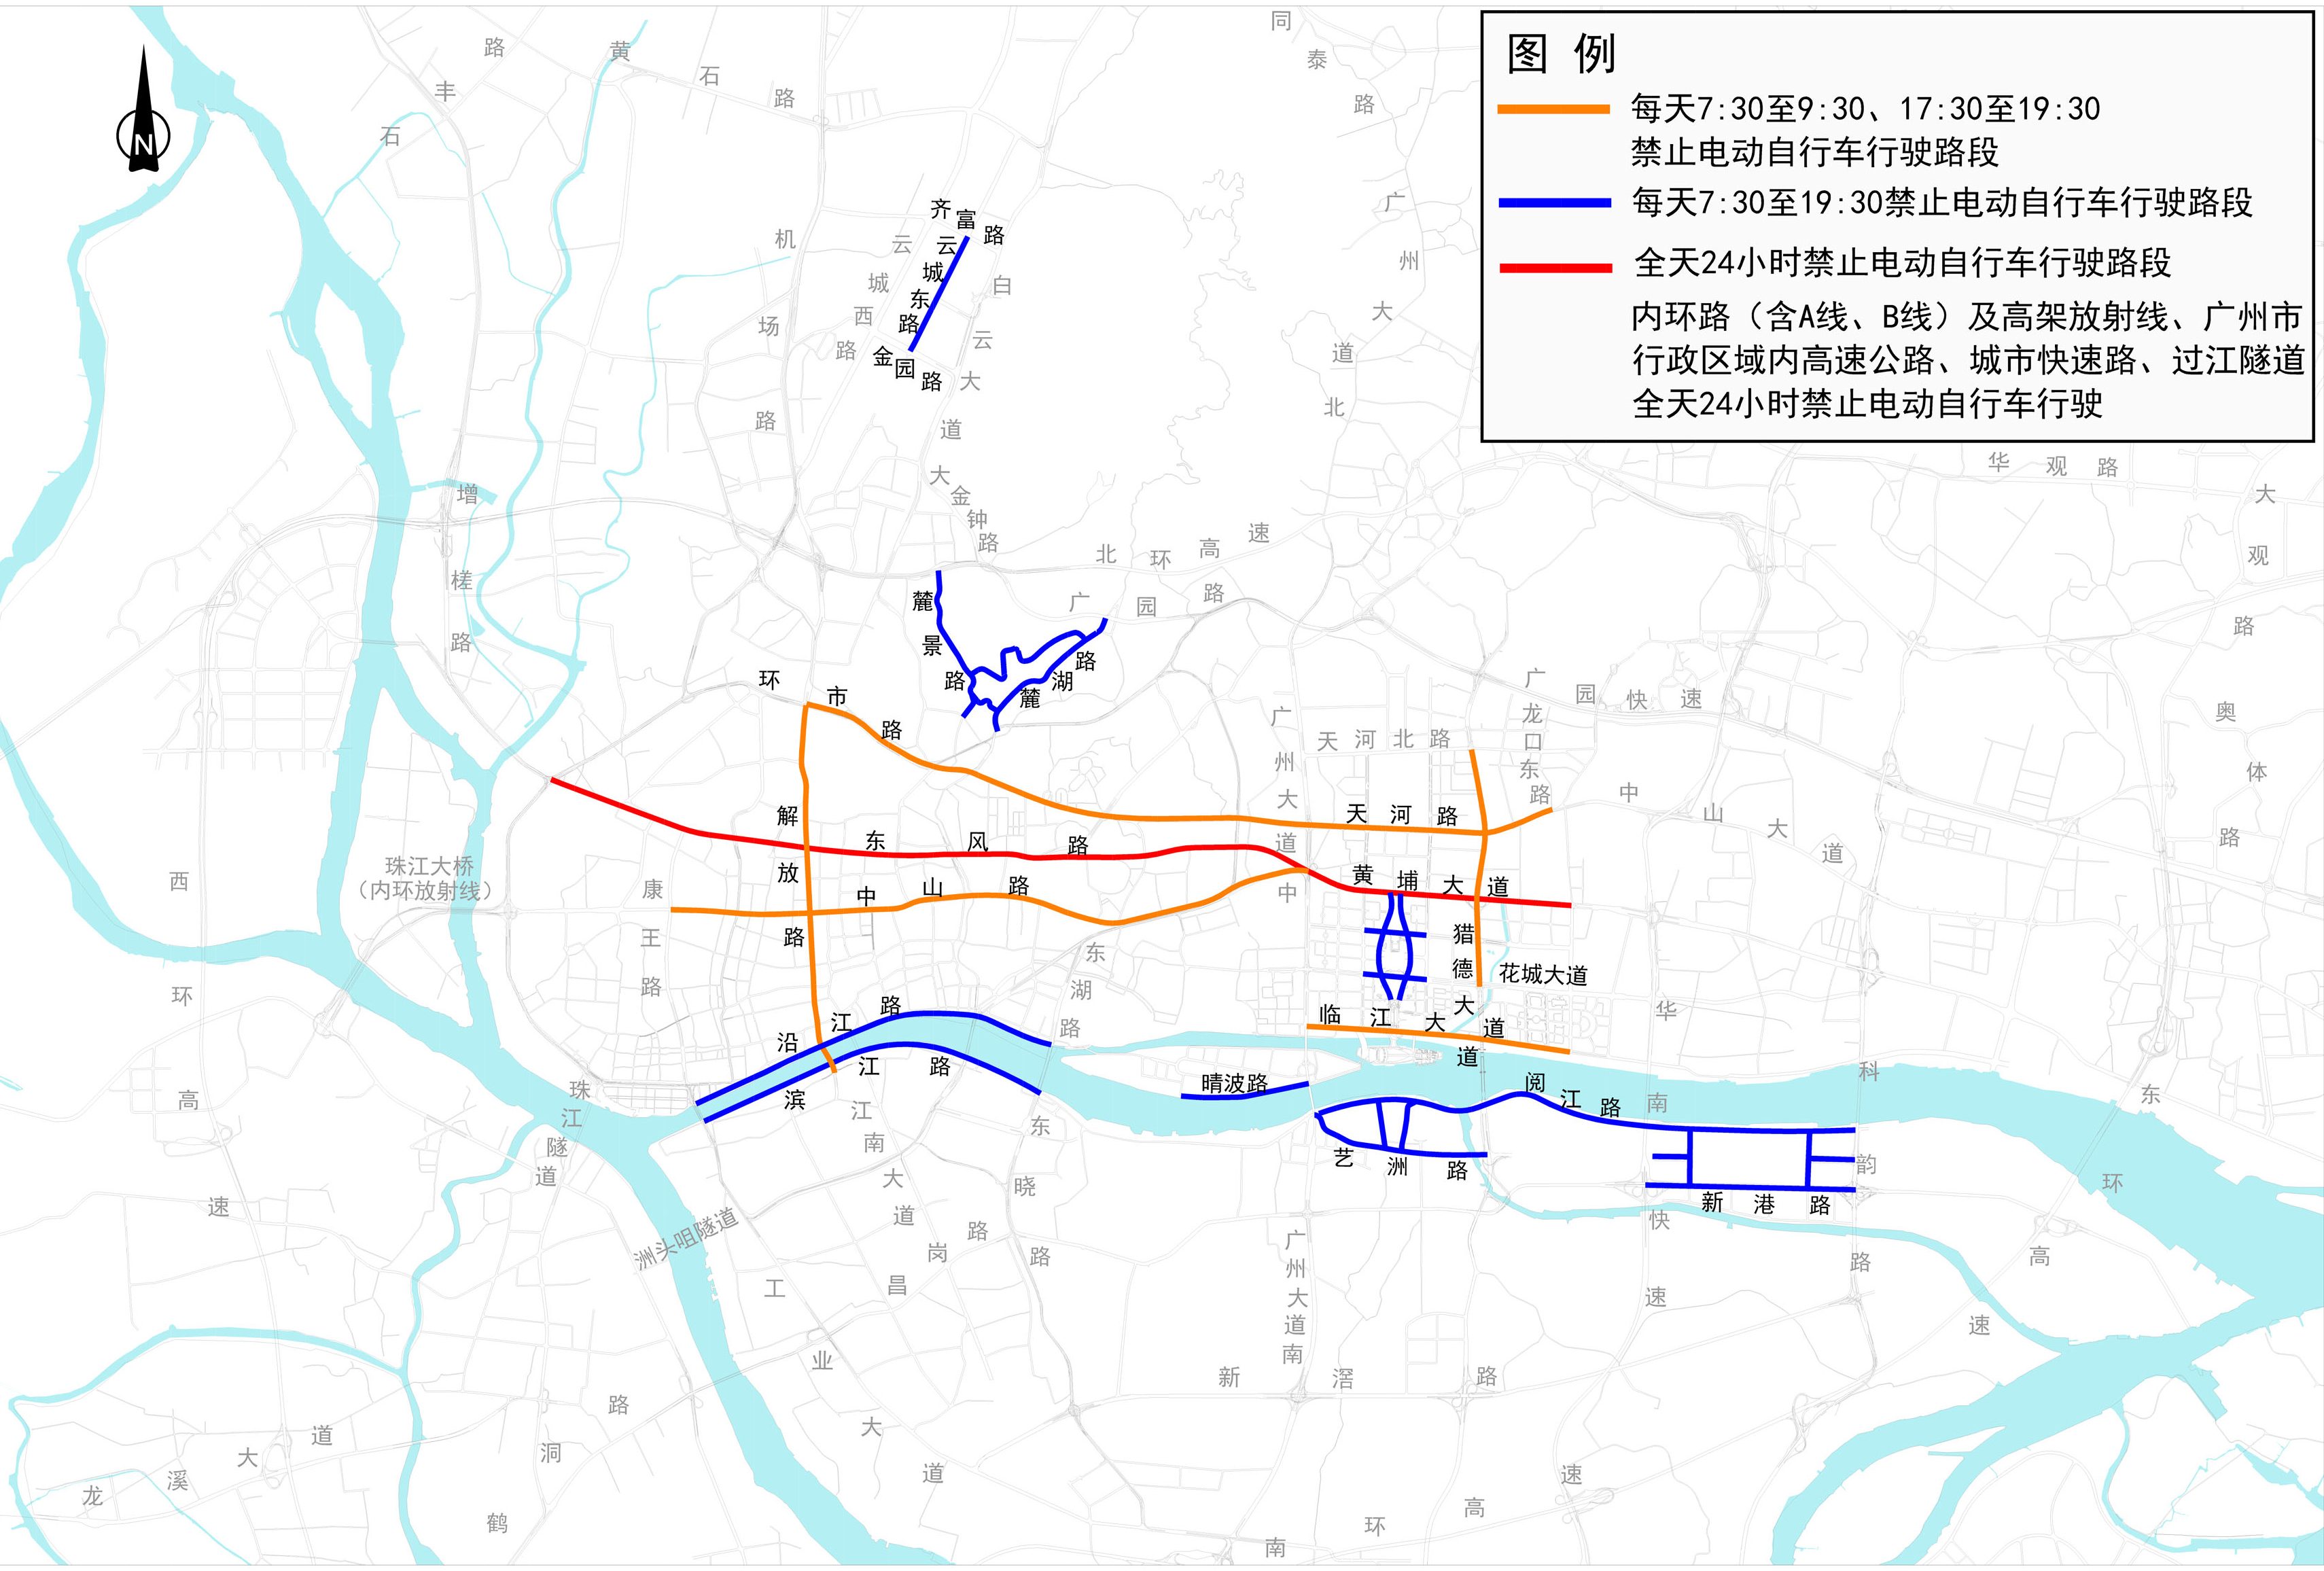 广州市电动自行车通行管理调整政策6日起再次向社会公开征求意见